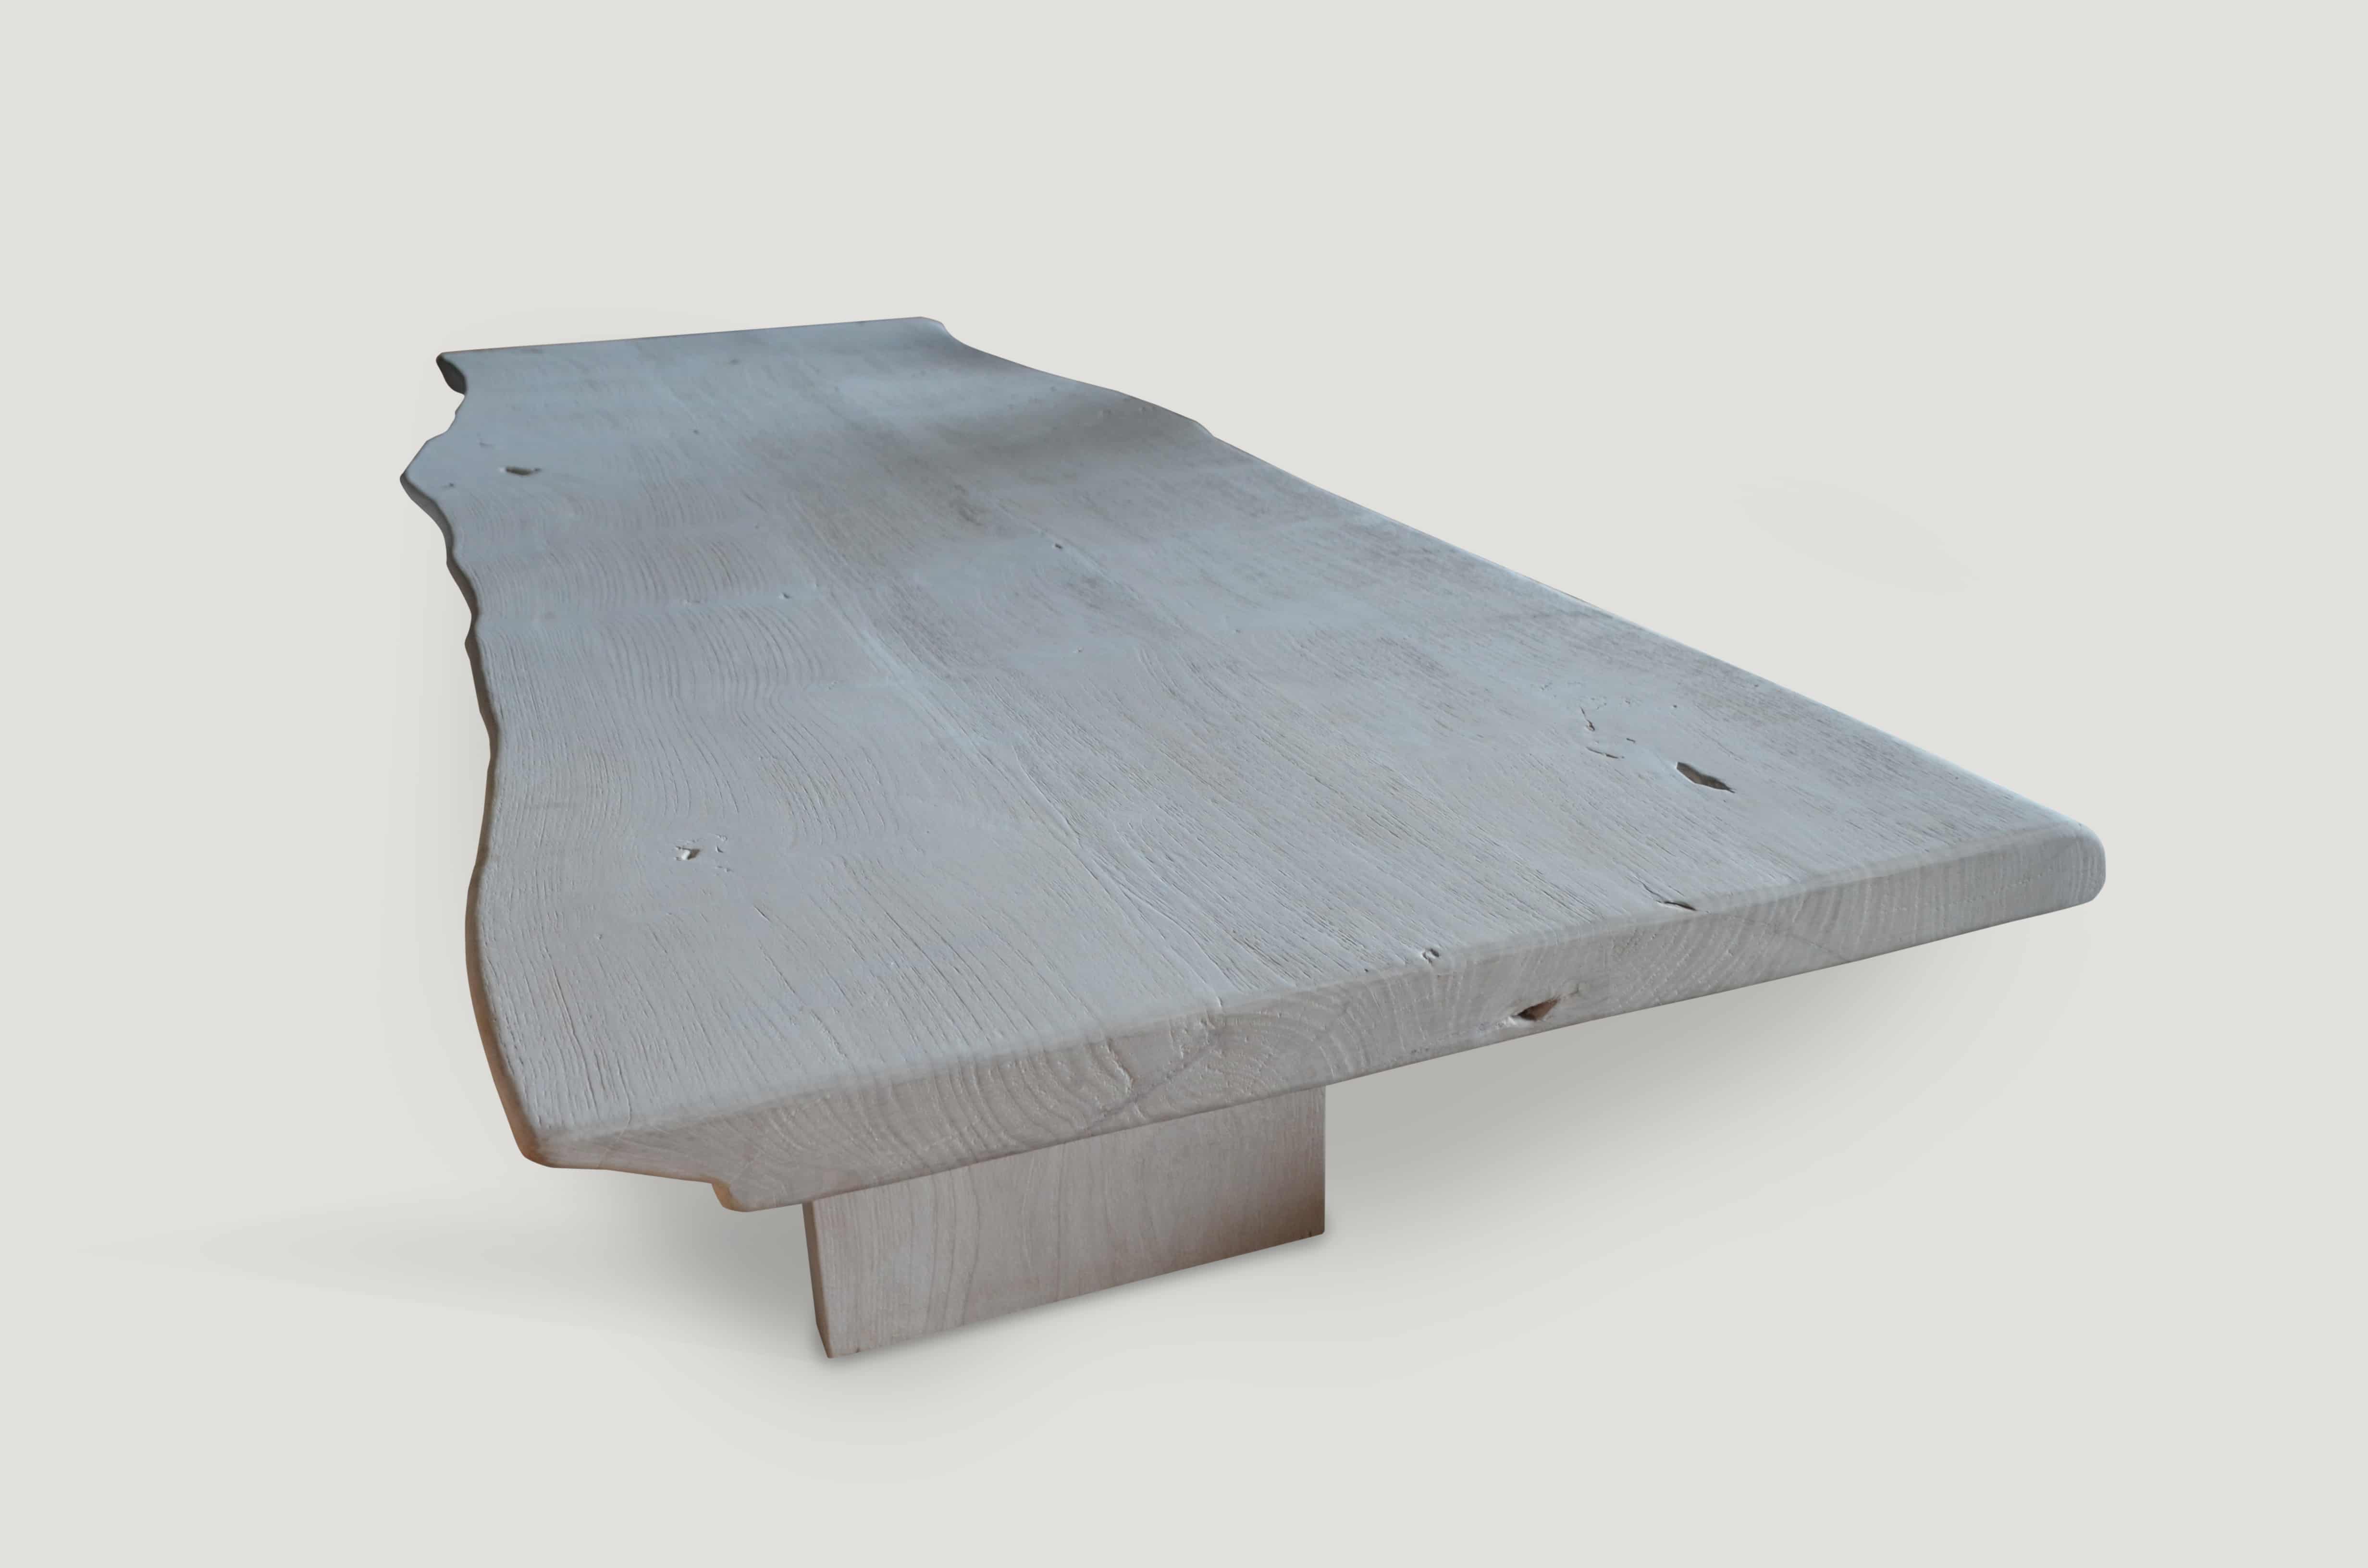 st. barts teak wood dining table